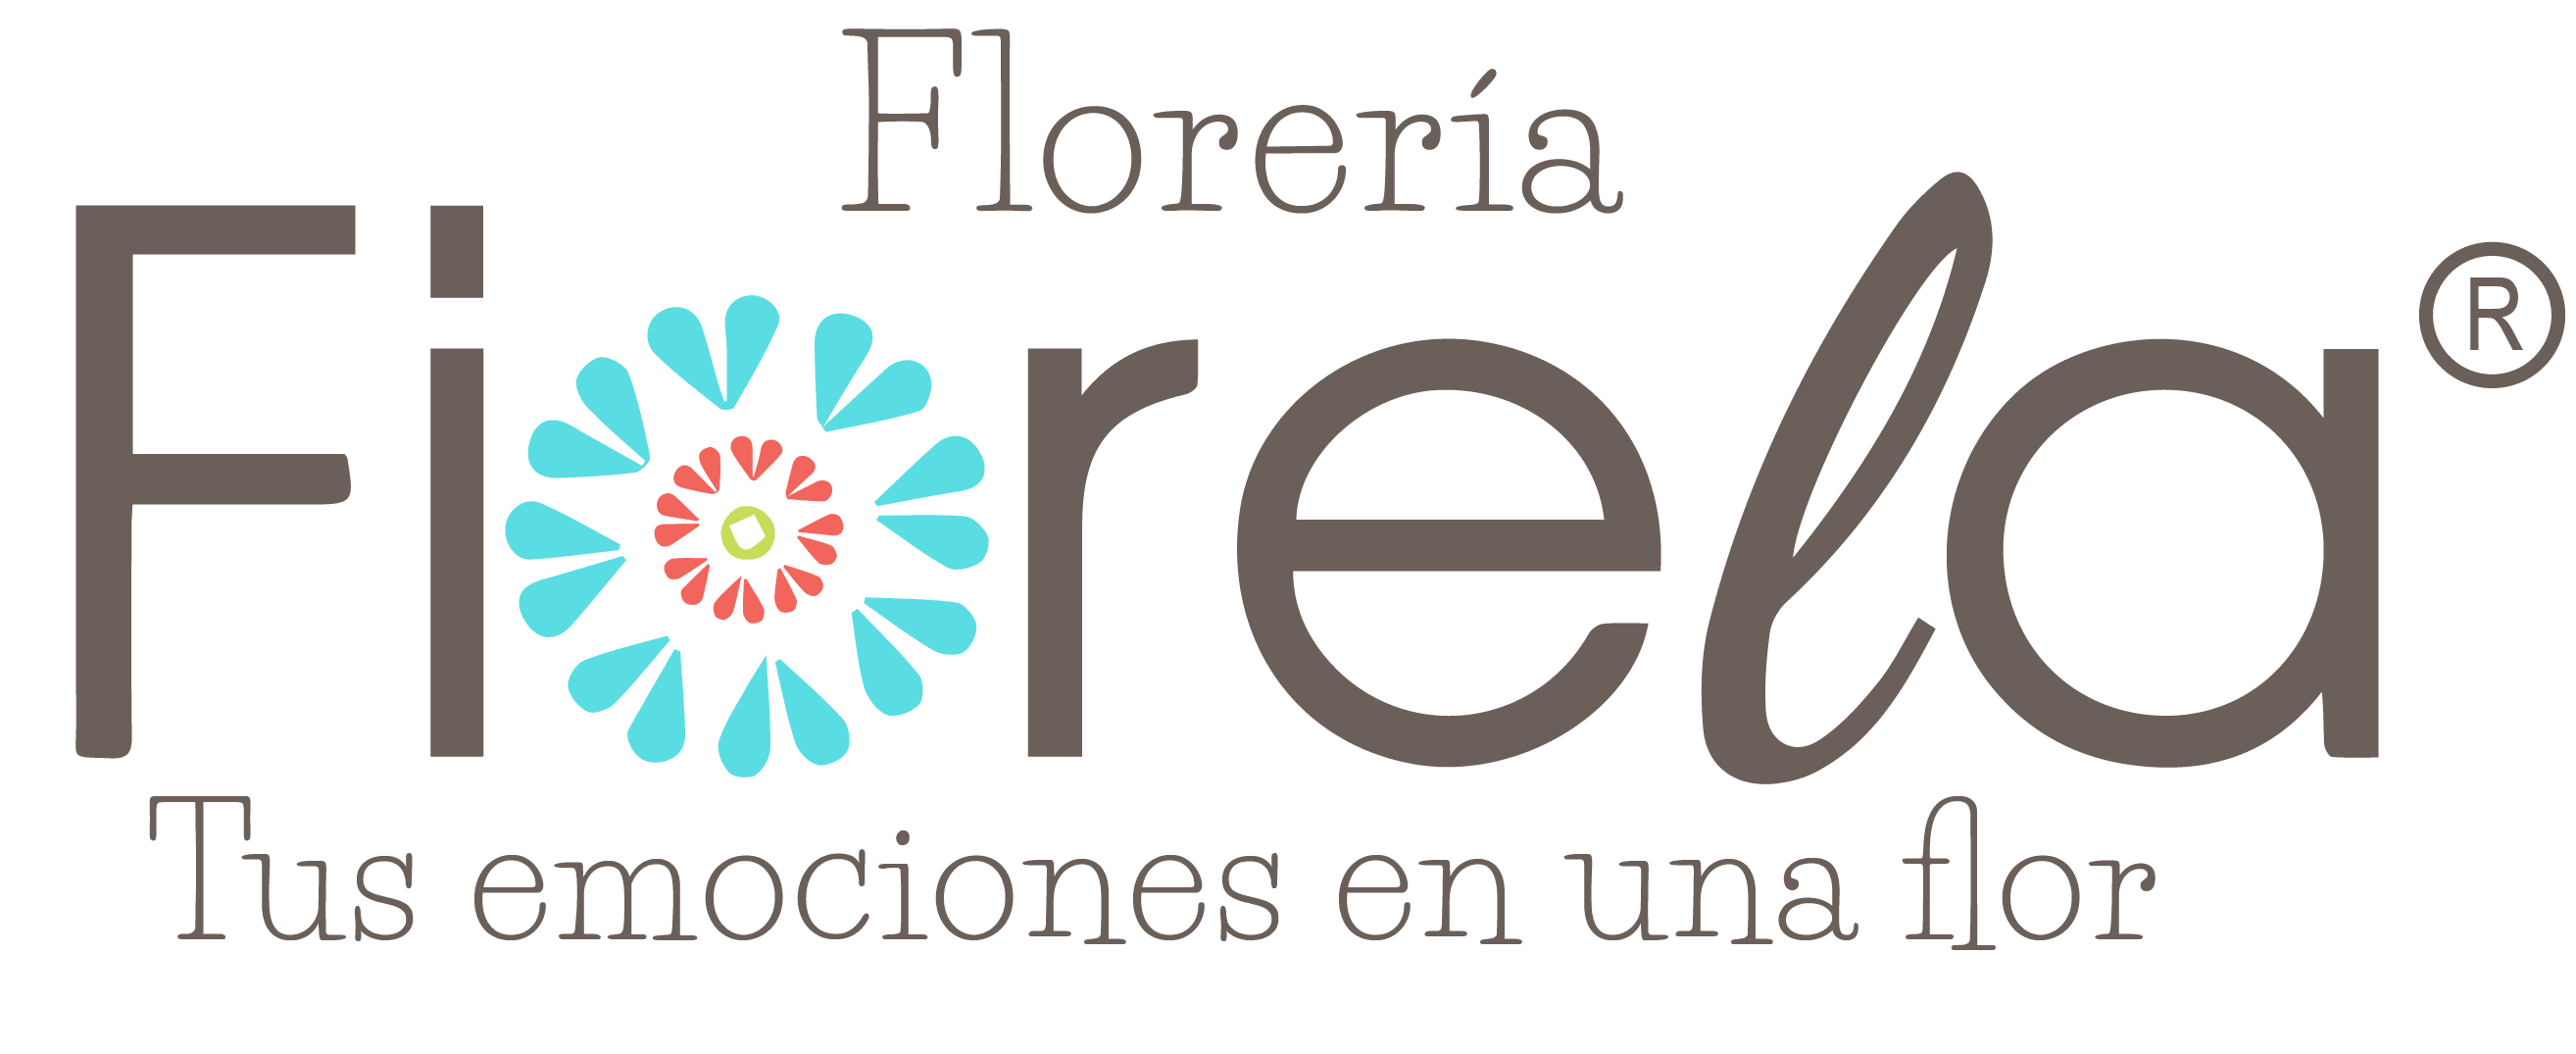 Florería Fiorela Cd Juarez